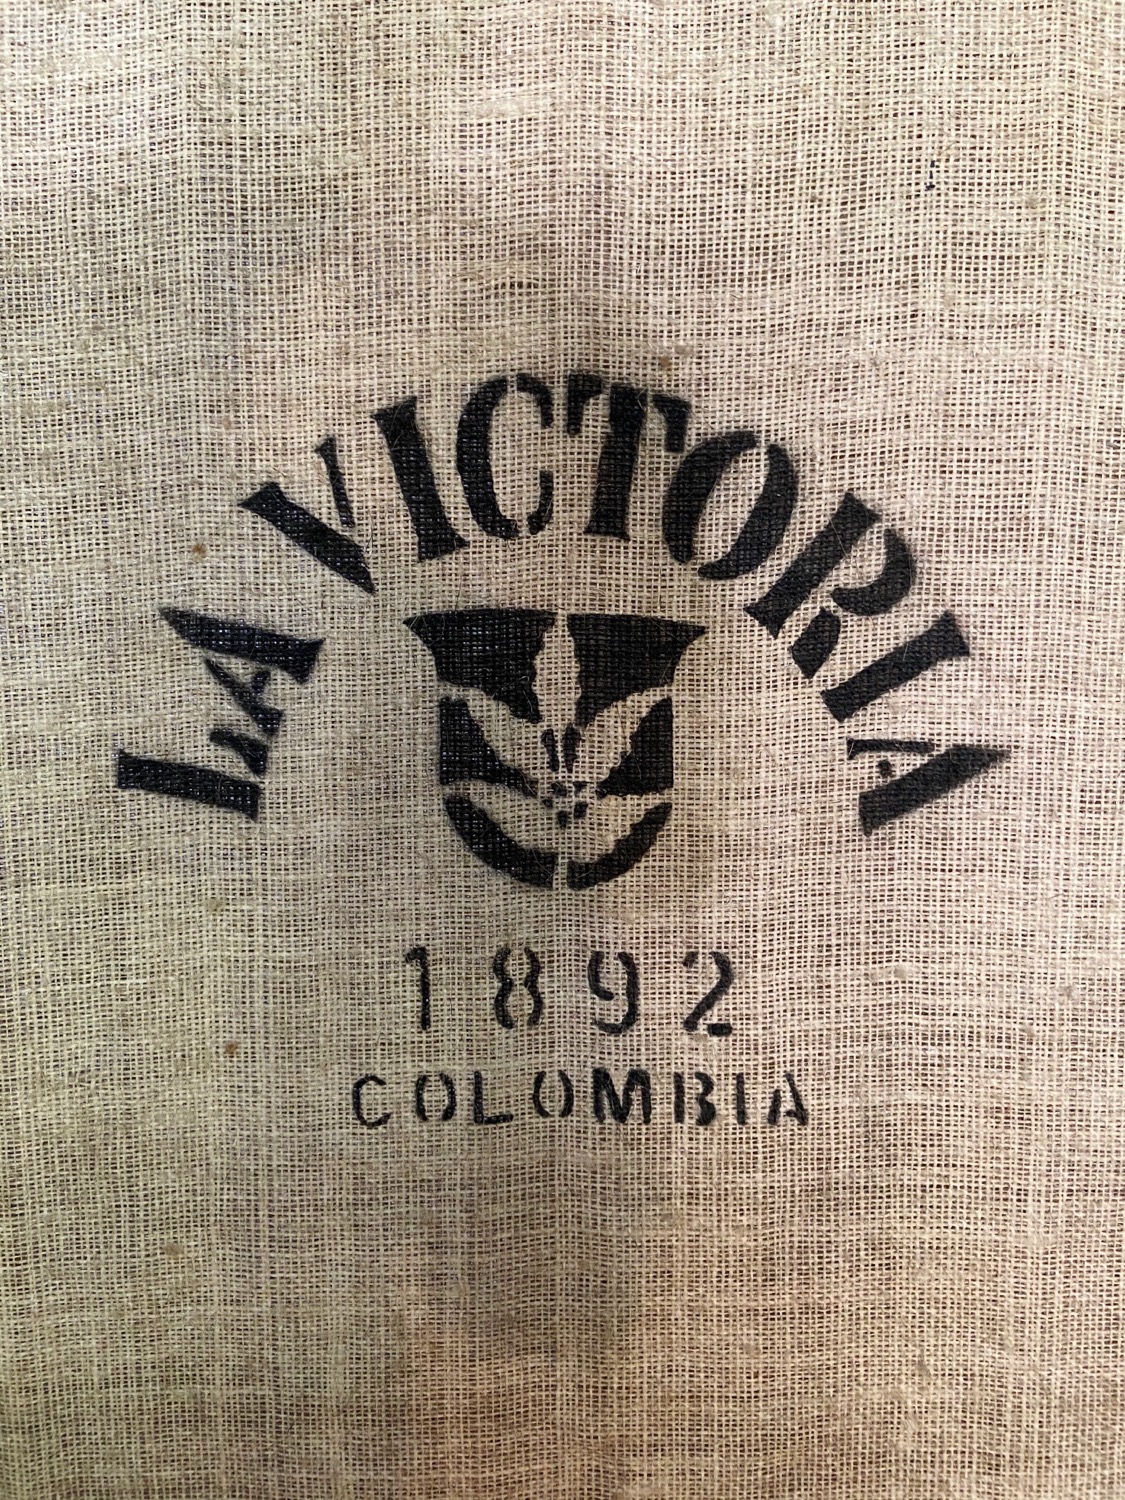 La Victoria Coffee Bean Sack, Minca, Colombia